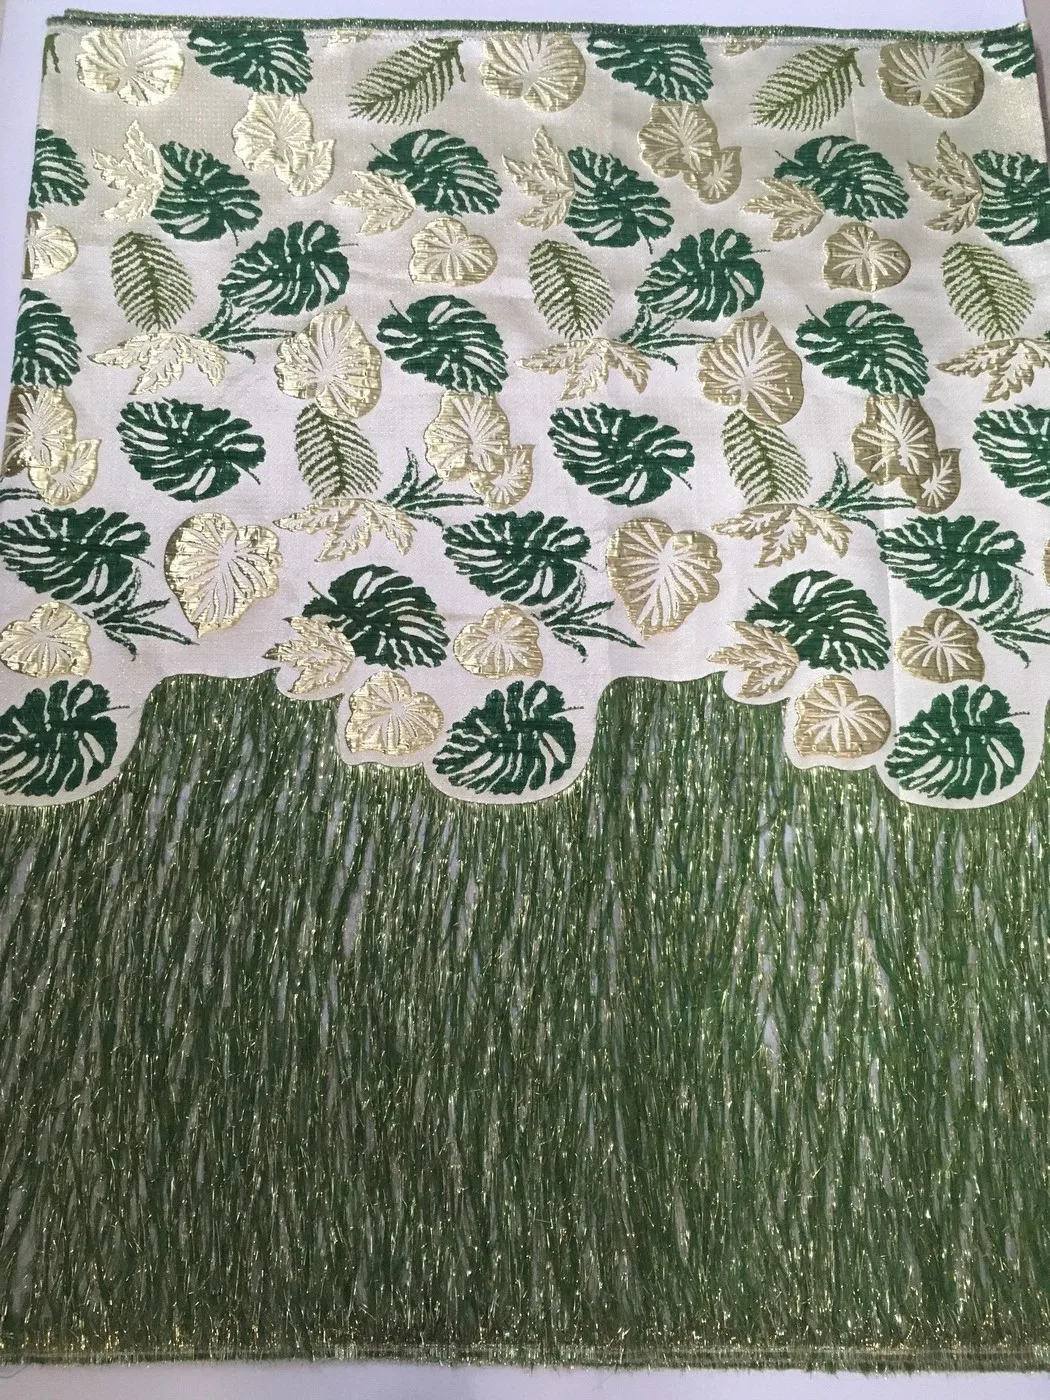 

2021 модное Африканское кружево с зелеными перьями, нигерийская кружевная ткань, высокое качество, французское жаккардовое кружево для вечернего платья LJK21110A